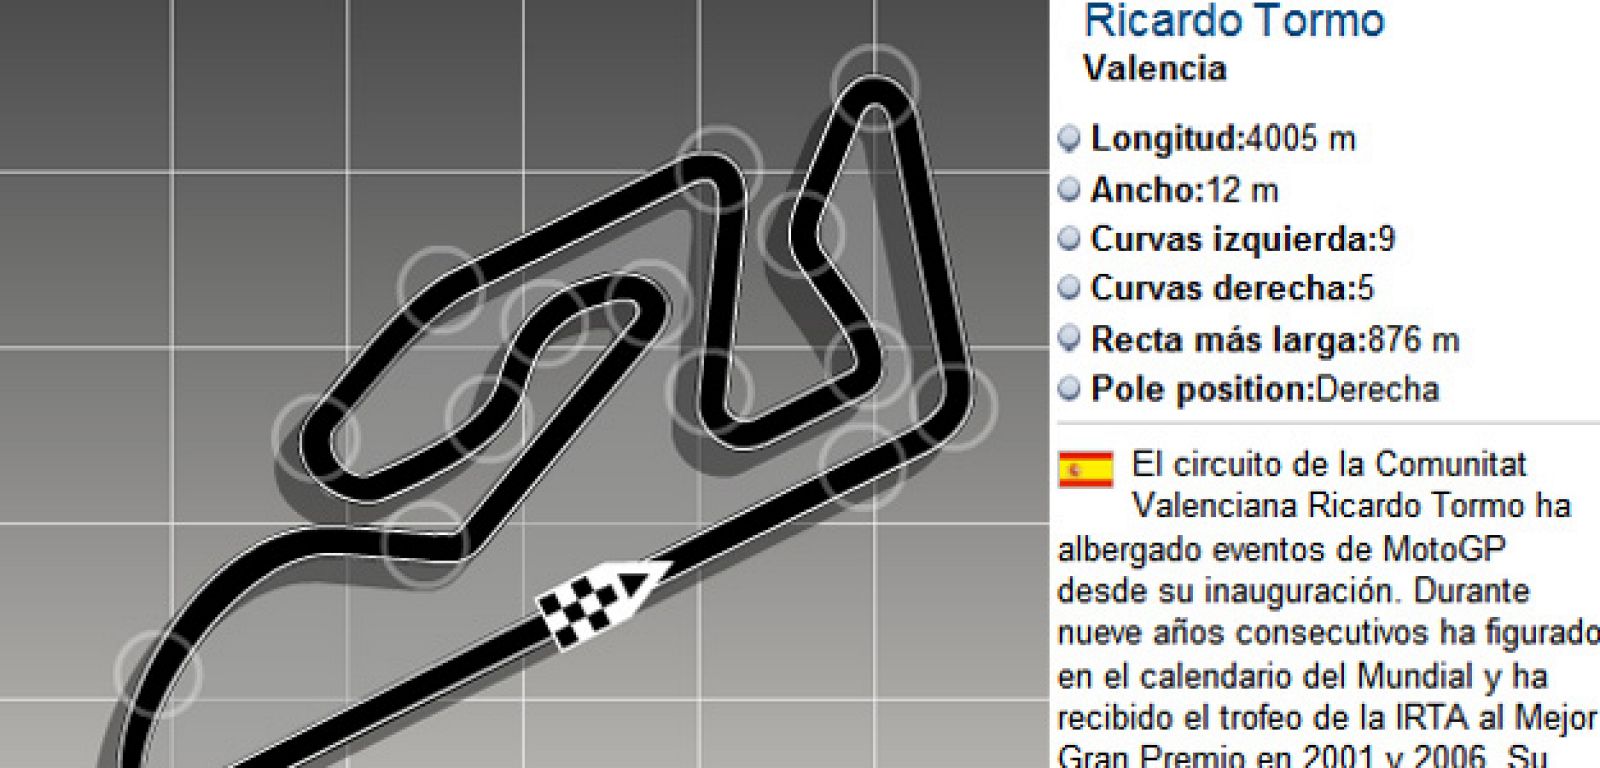 El circuito de Ricardo Tormo pondrá el nombre de Terol a una de sus curvas.